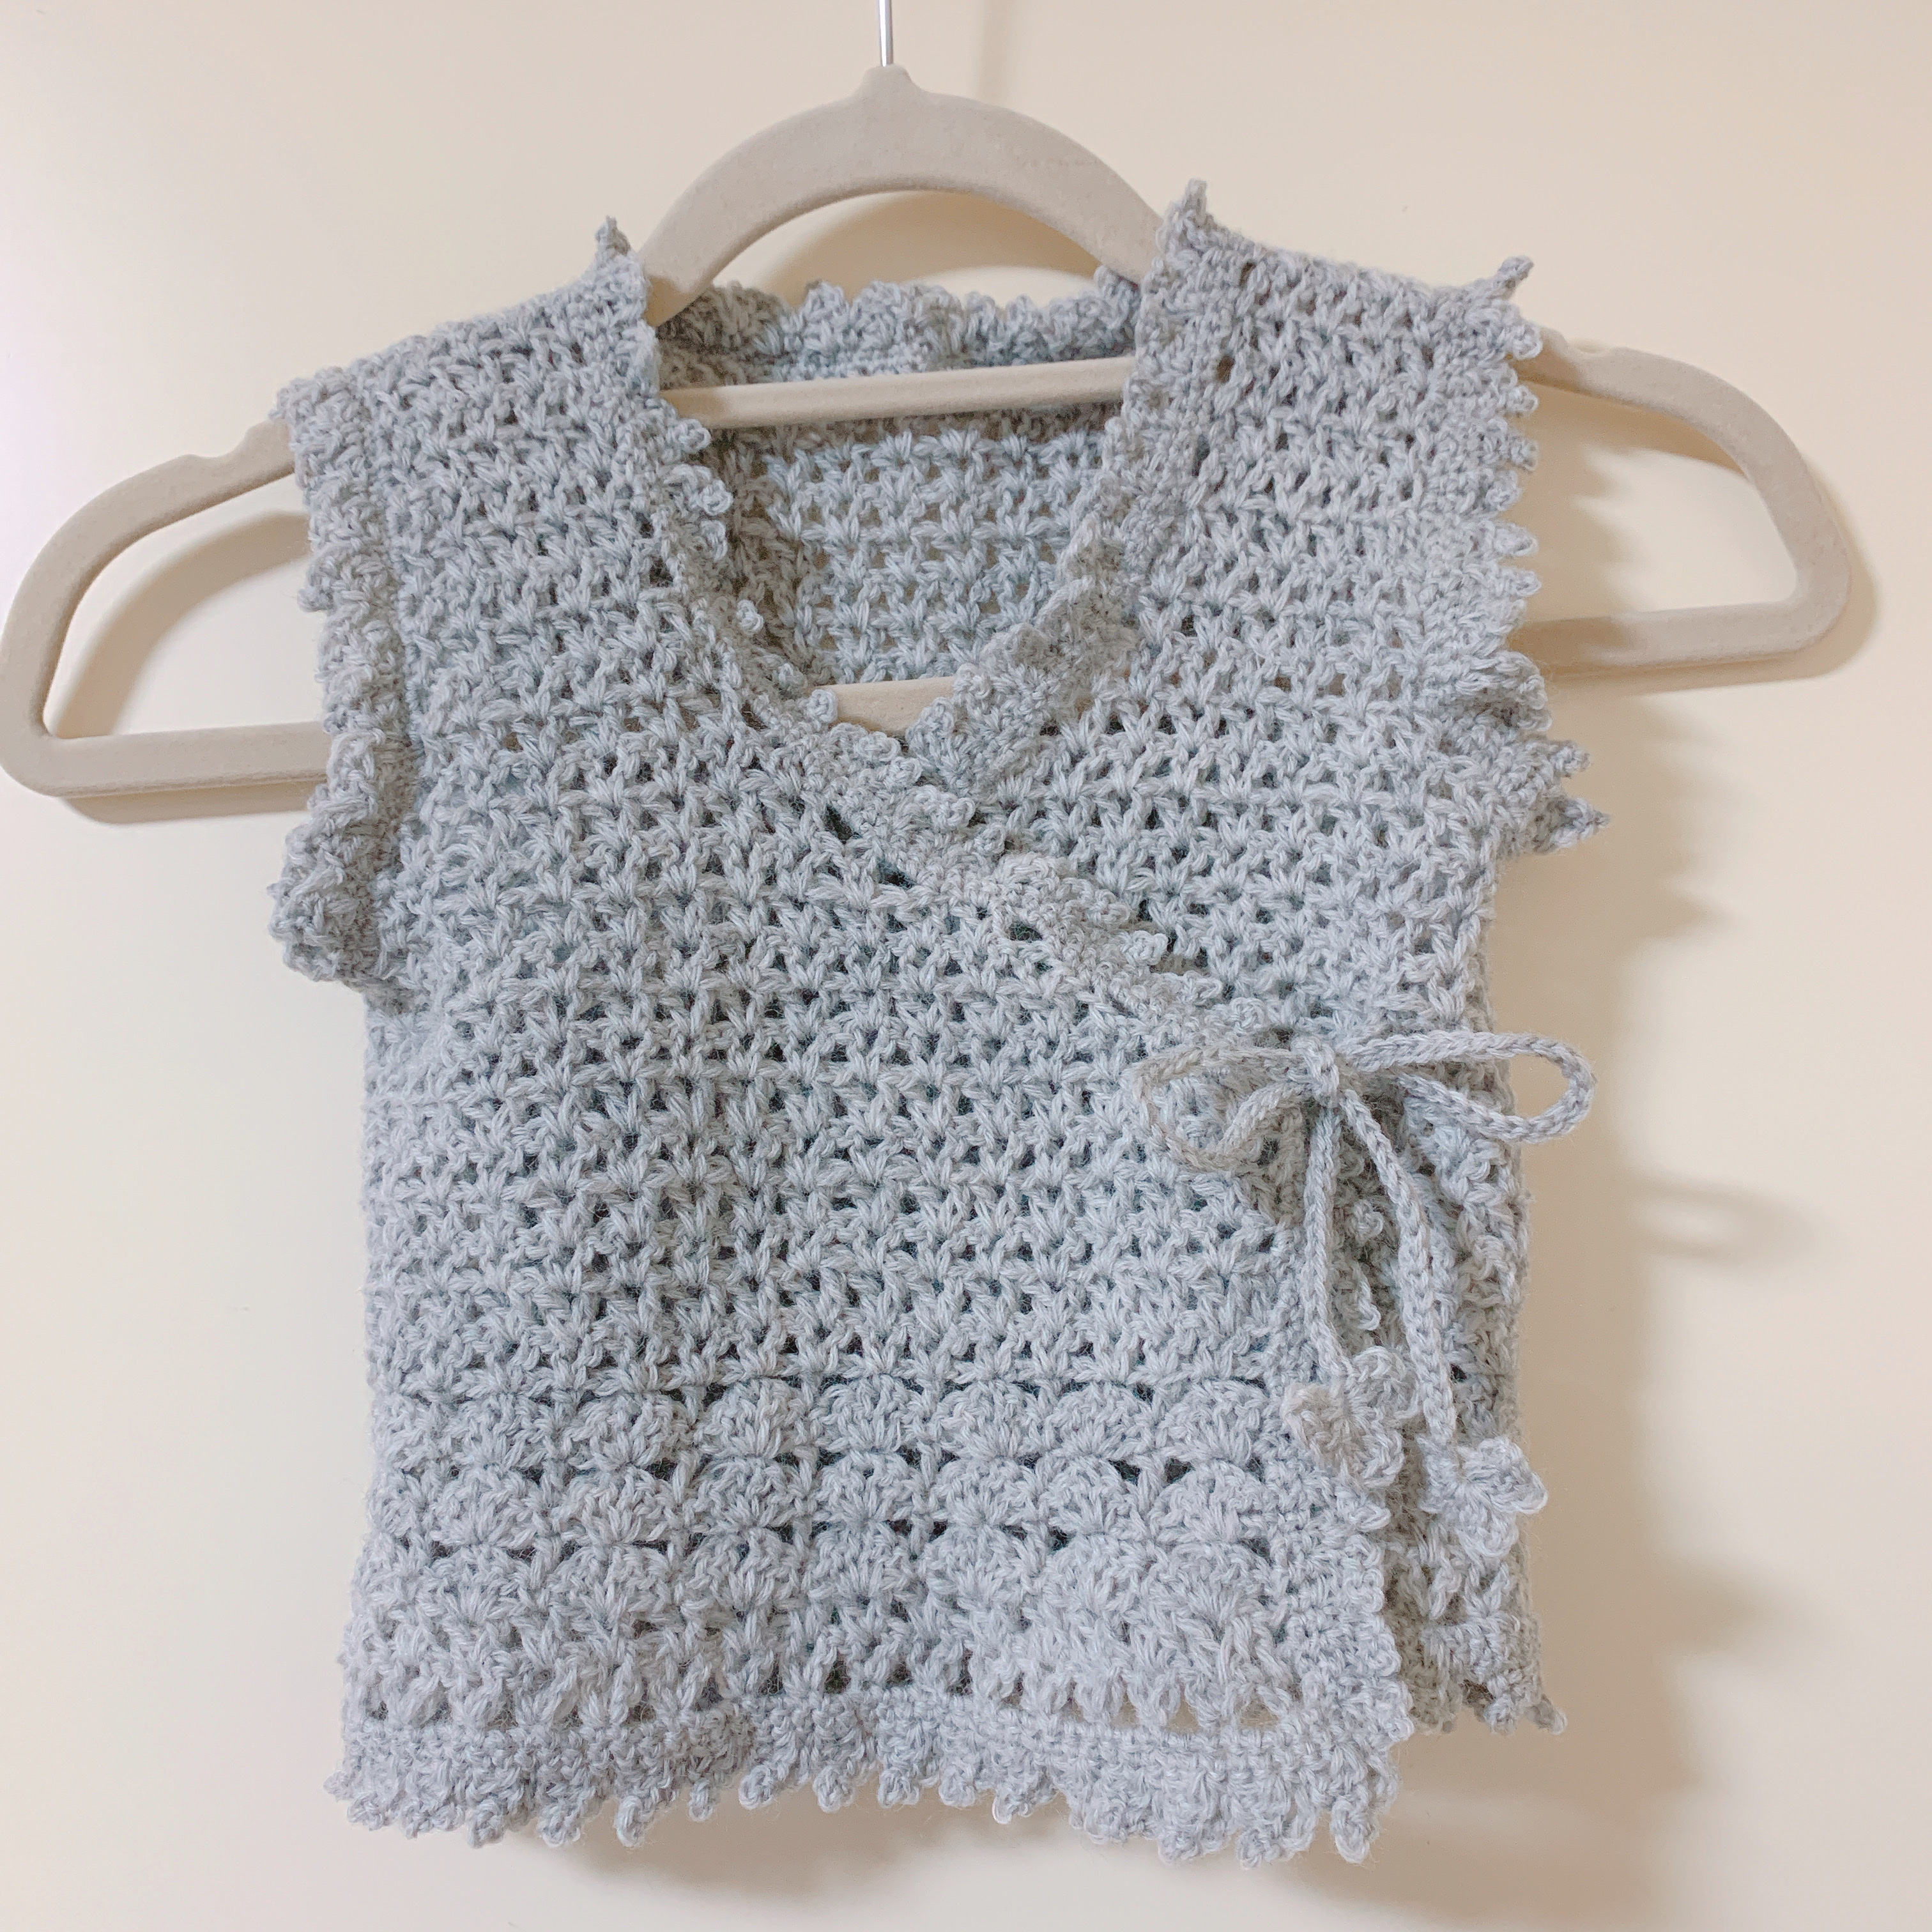 妊娠中に作ったかぎ針編みの手作りベビーグッズ かおみいログ